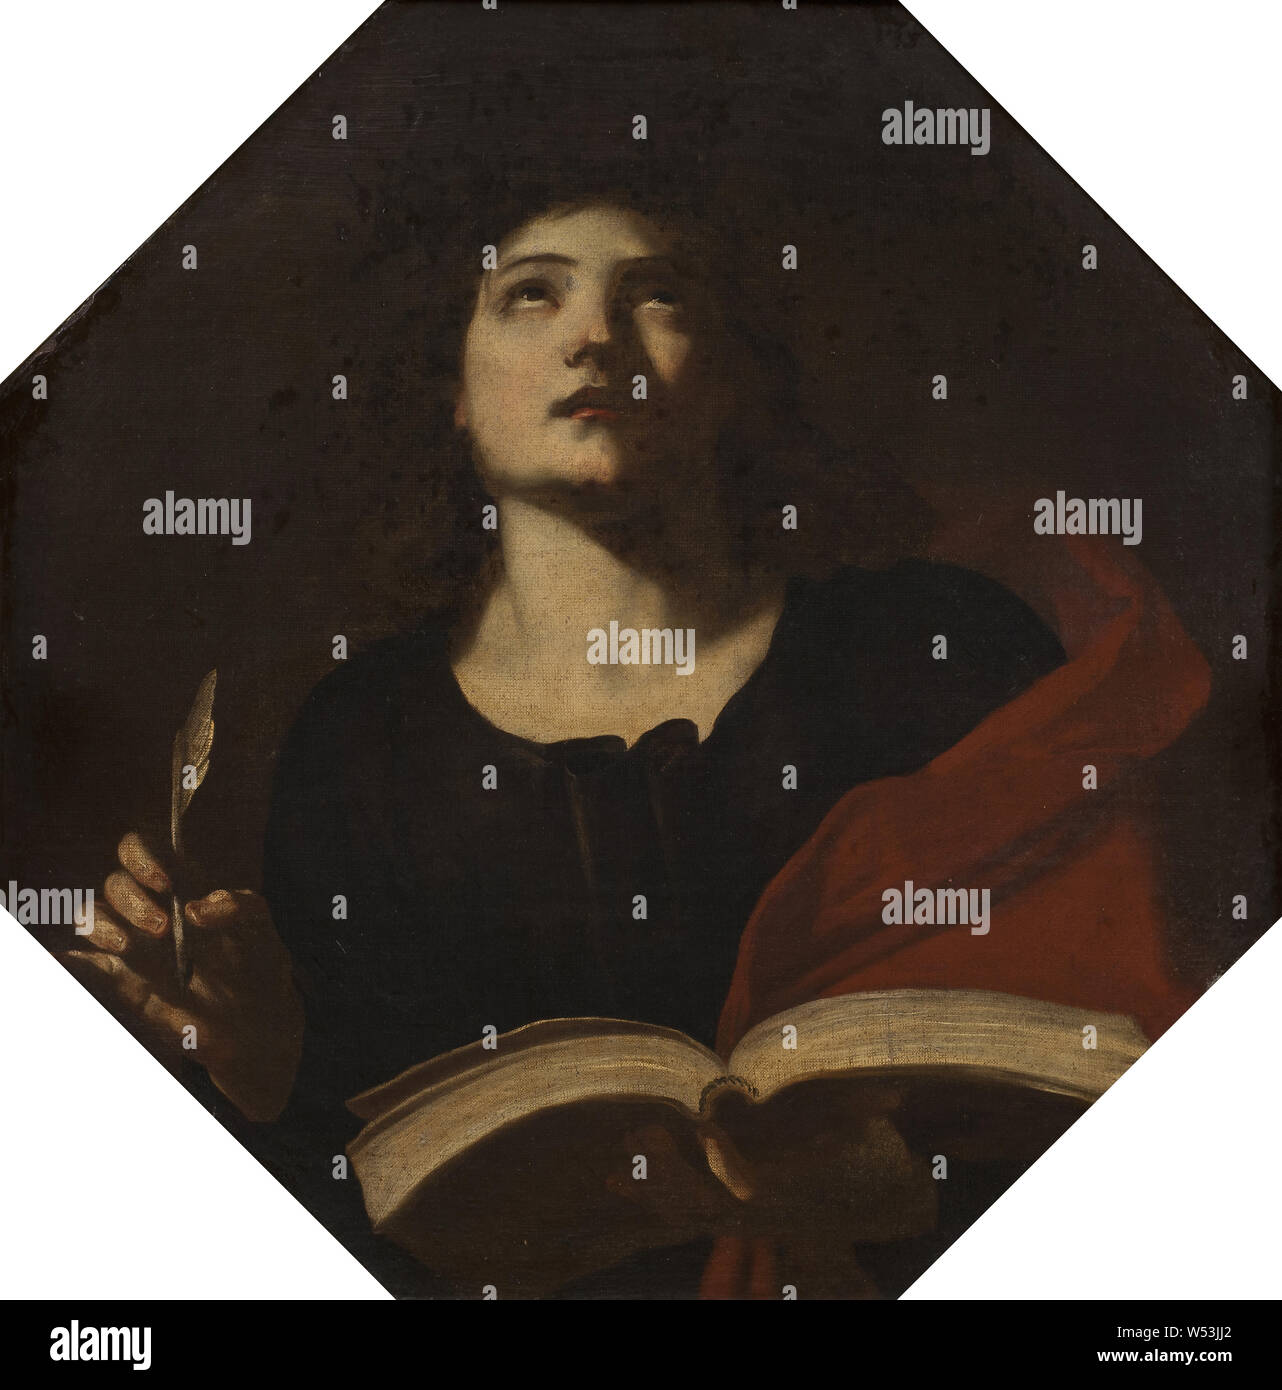 San juan evangelista pintura fotografías e imágenes de alta resolución -  Alamy